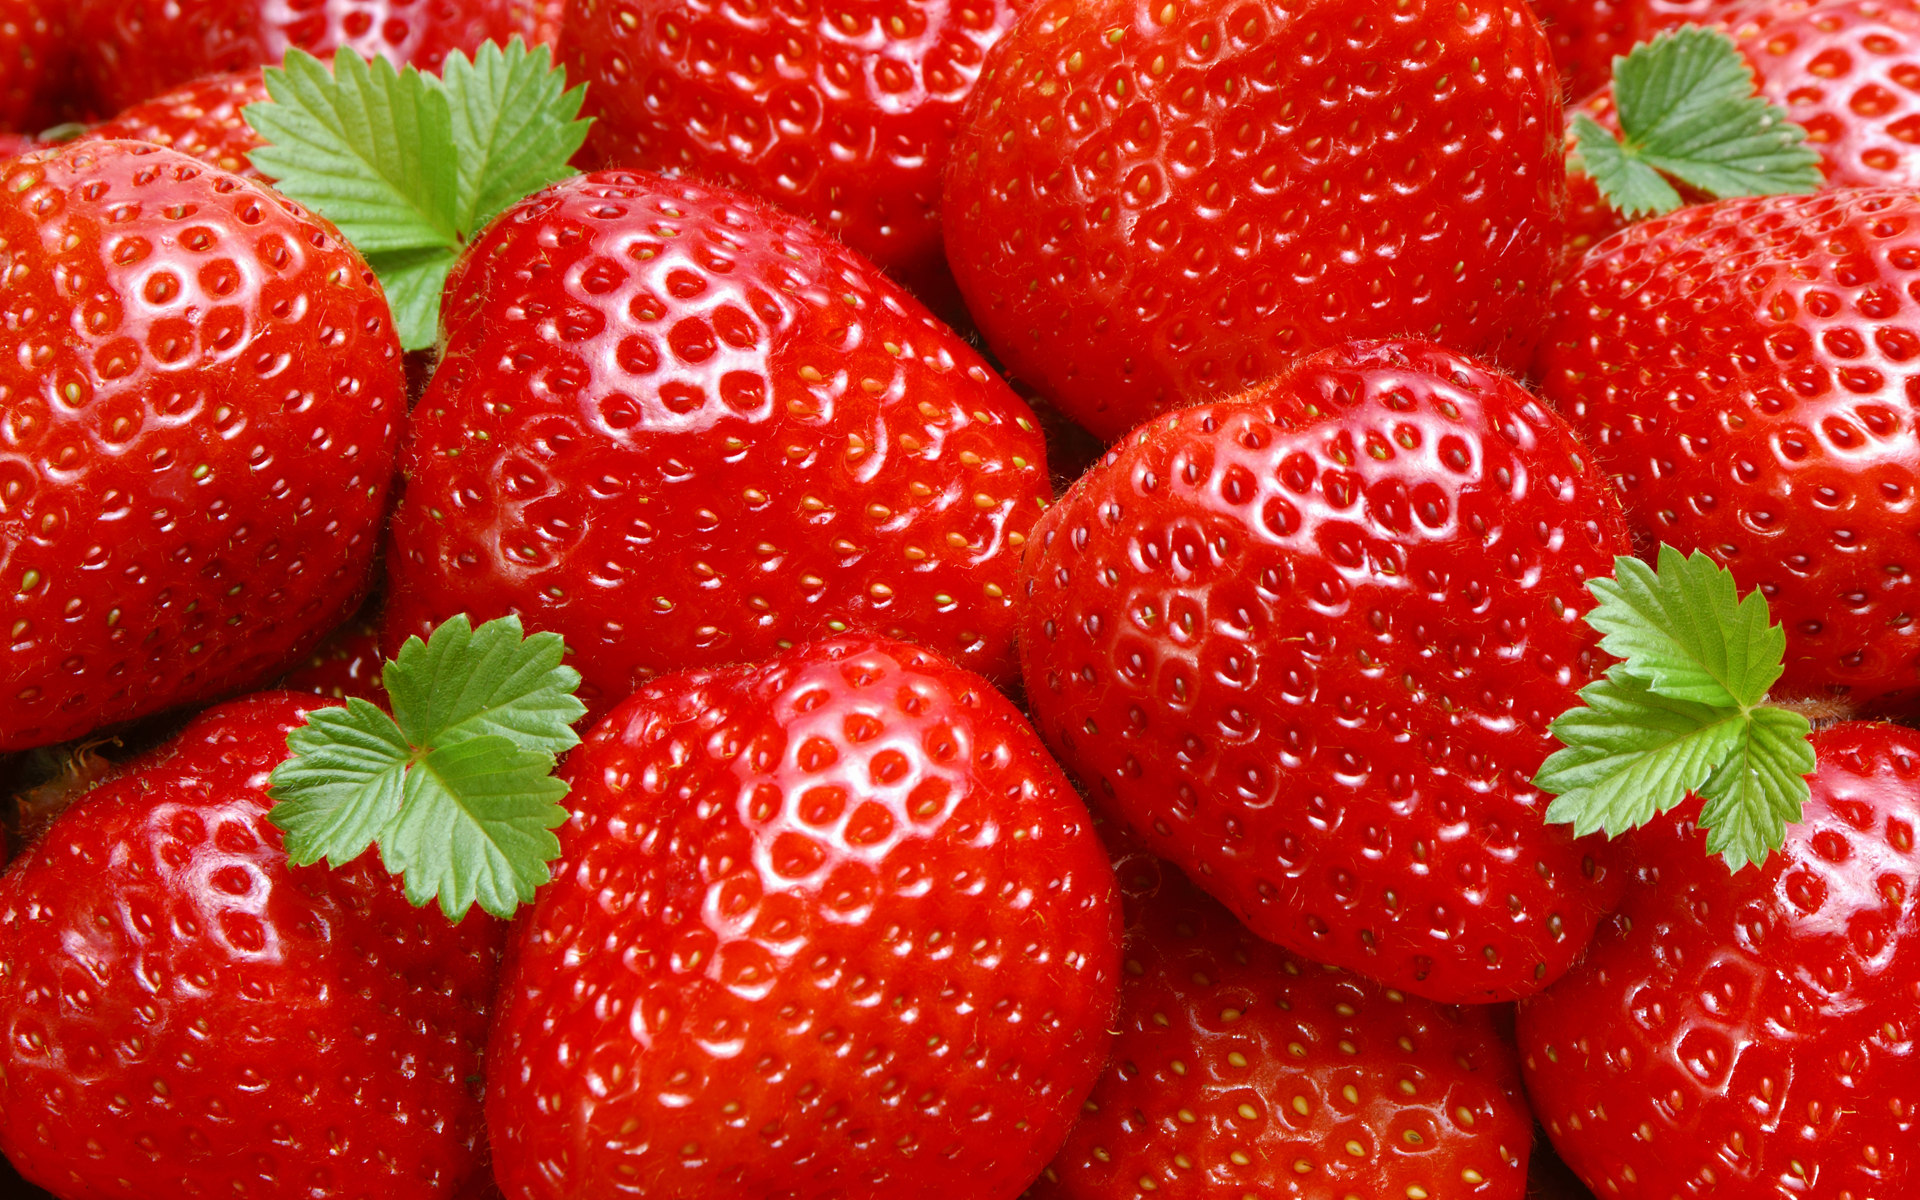 Juicy Red Strawberries ♡